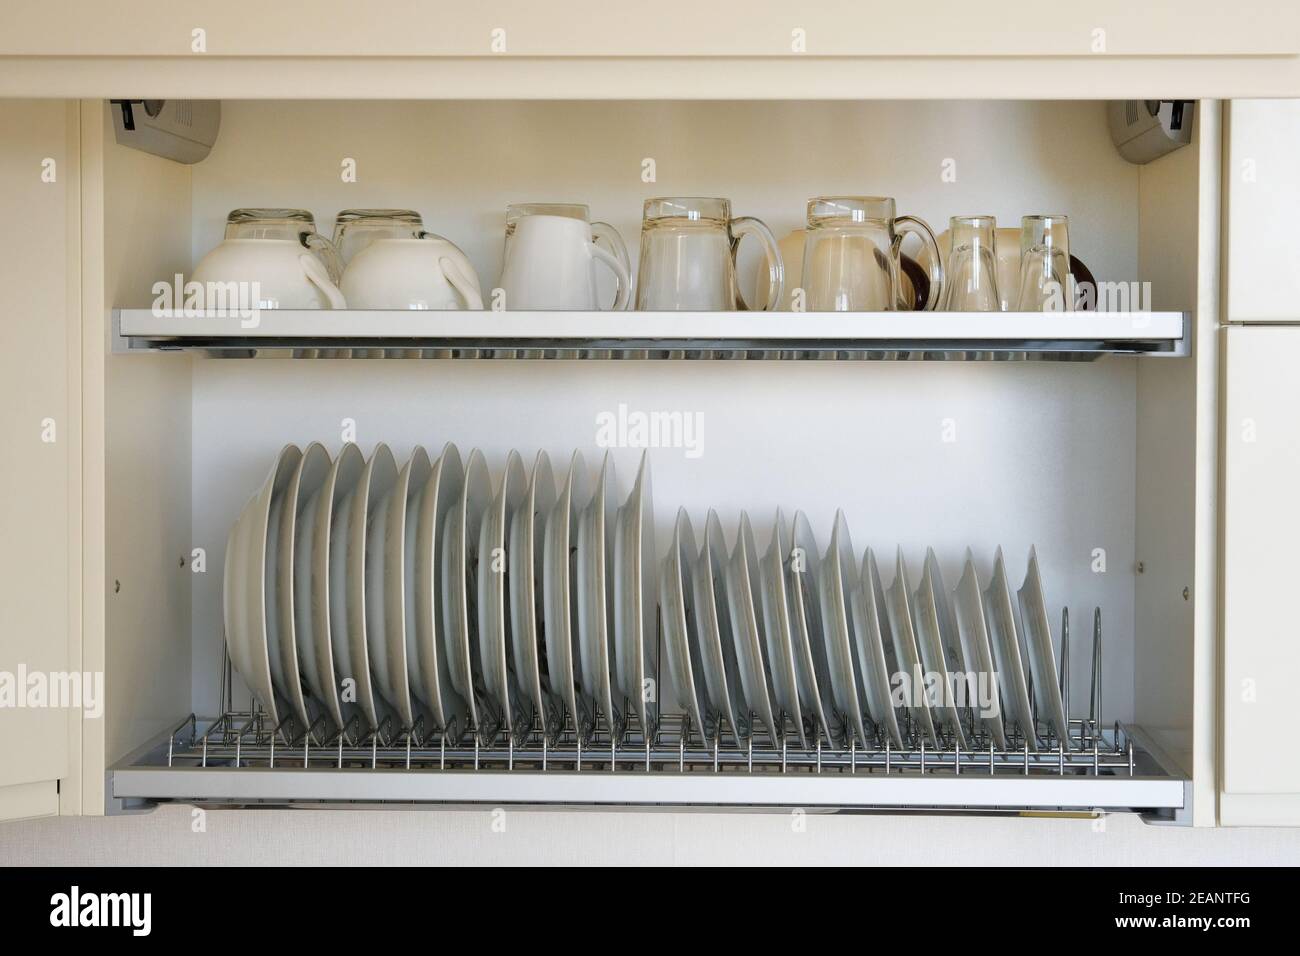 Scaffale per l'asciugatura di stoviglie in cucina moderna. Piatti in vetro bianco e ceramica puliti e lavati su scaffale in metallo all'interno dell'armadio della cucina. Foto Stock